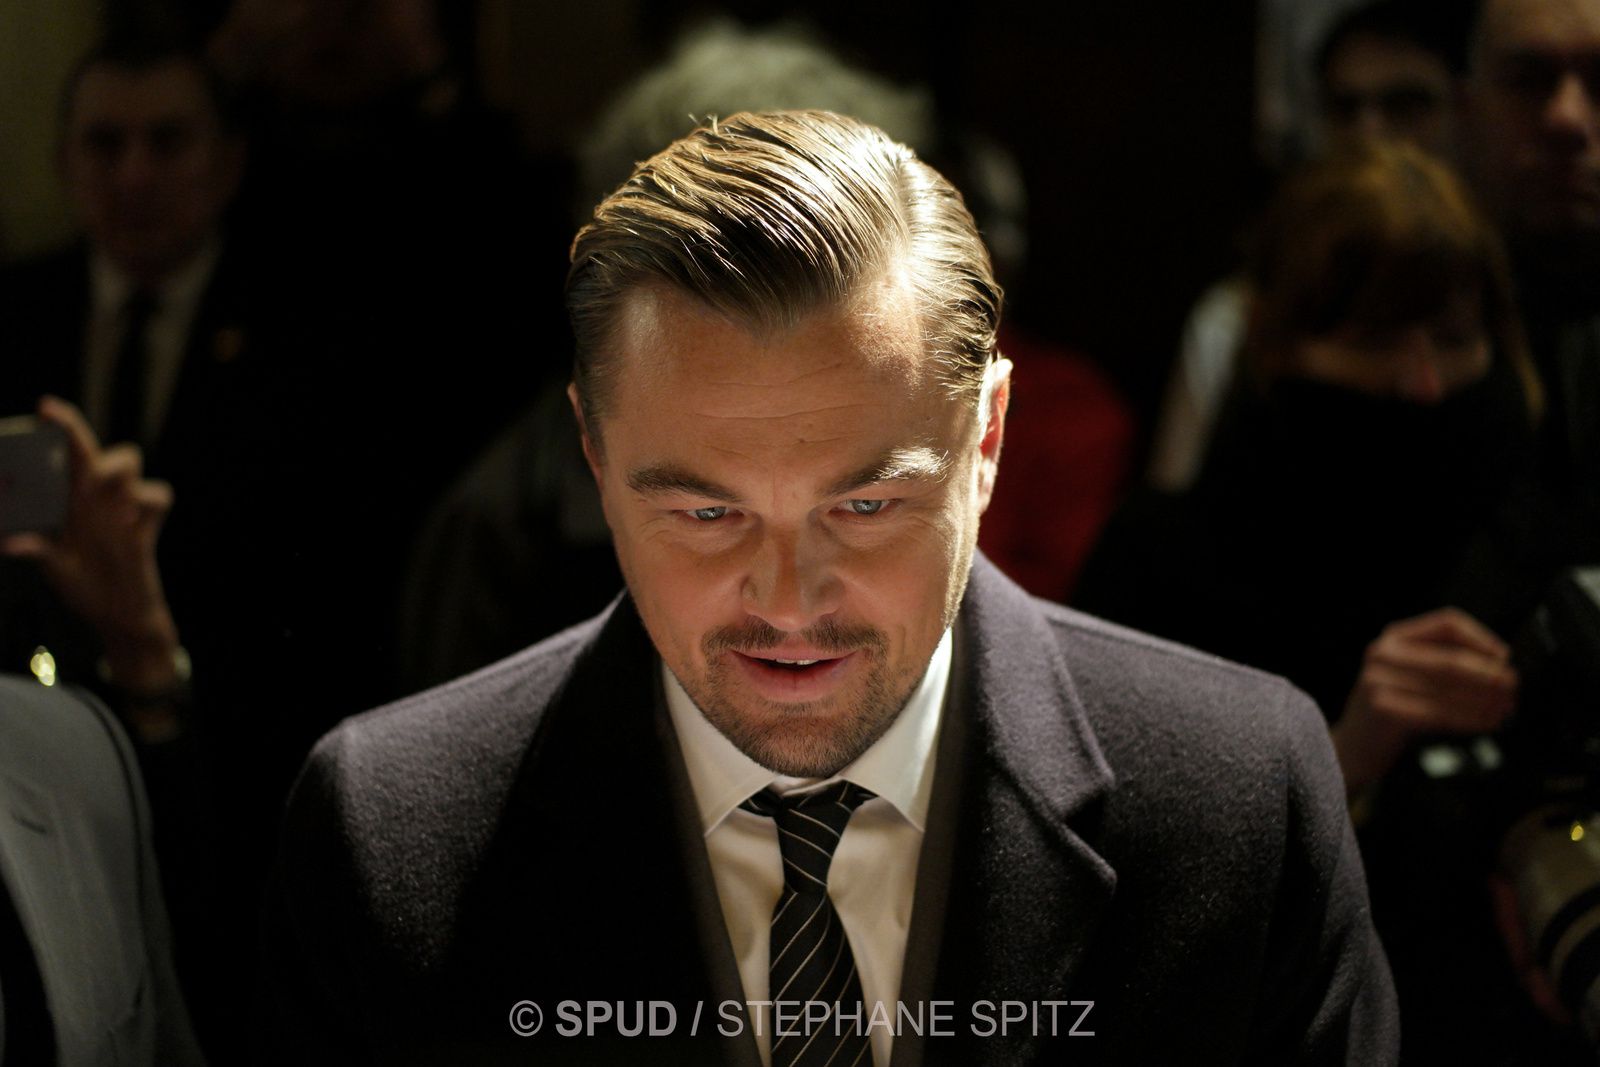 Léonardo DiCaprio